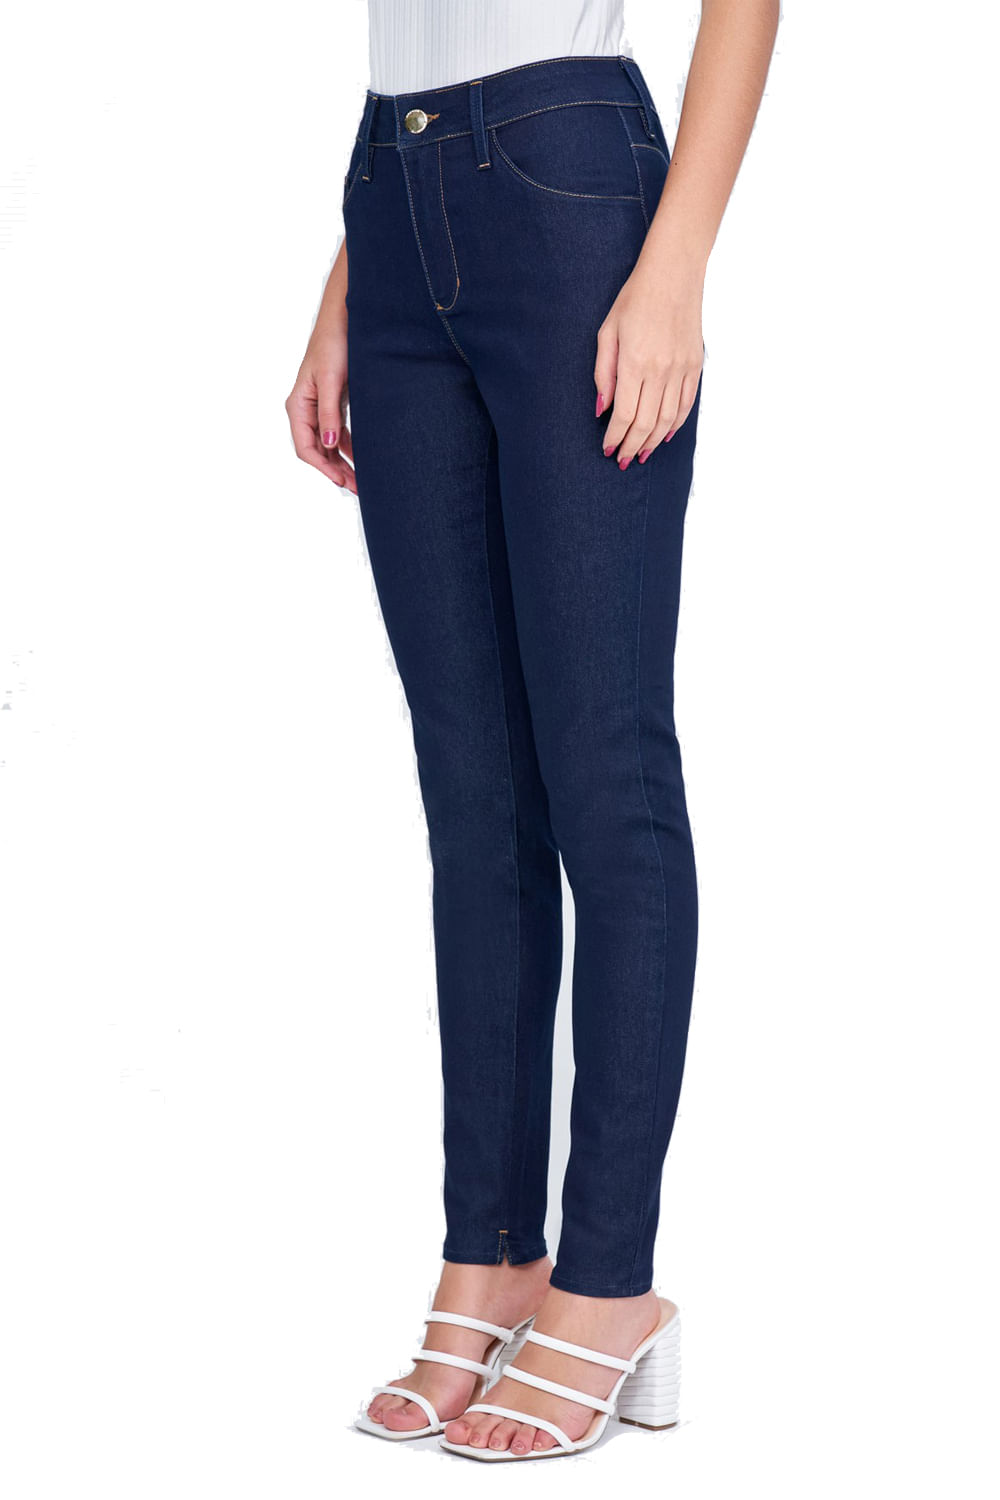 Calça Jeans Lado Avesso Curve Jegging Azul - Garm Store